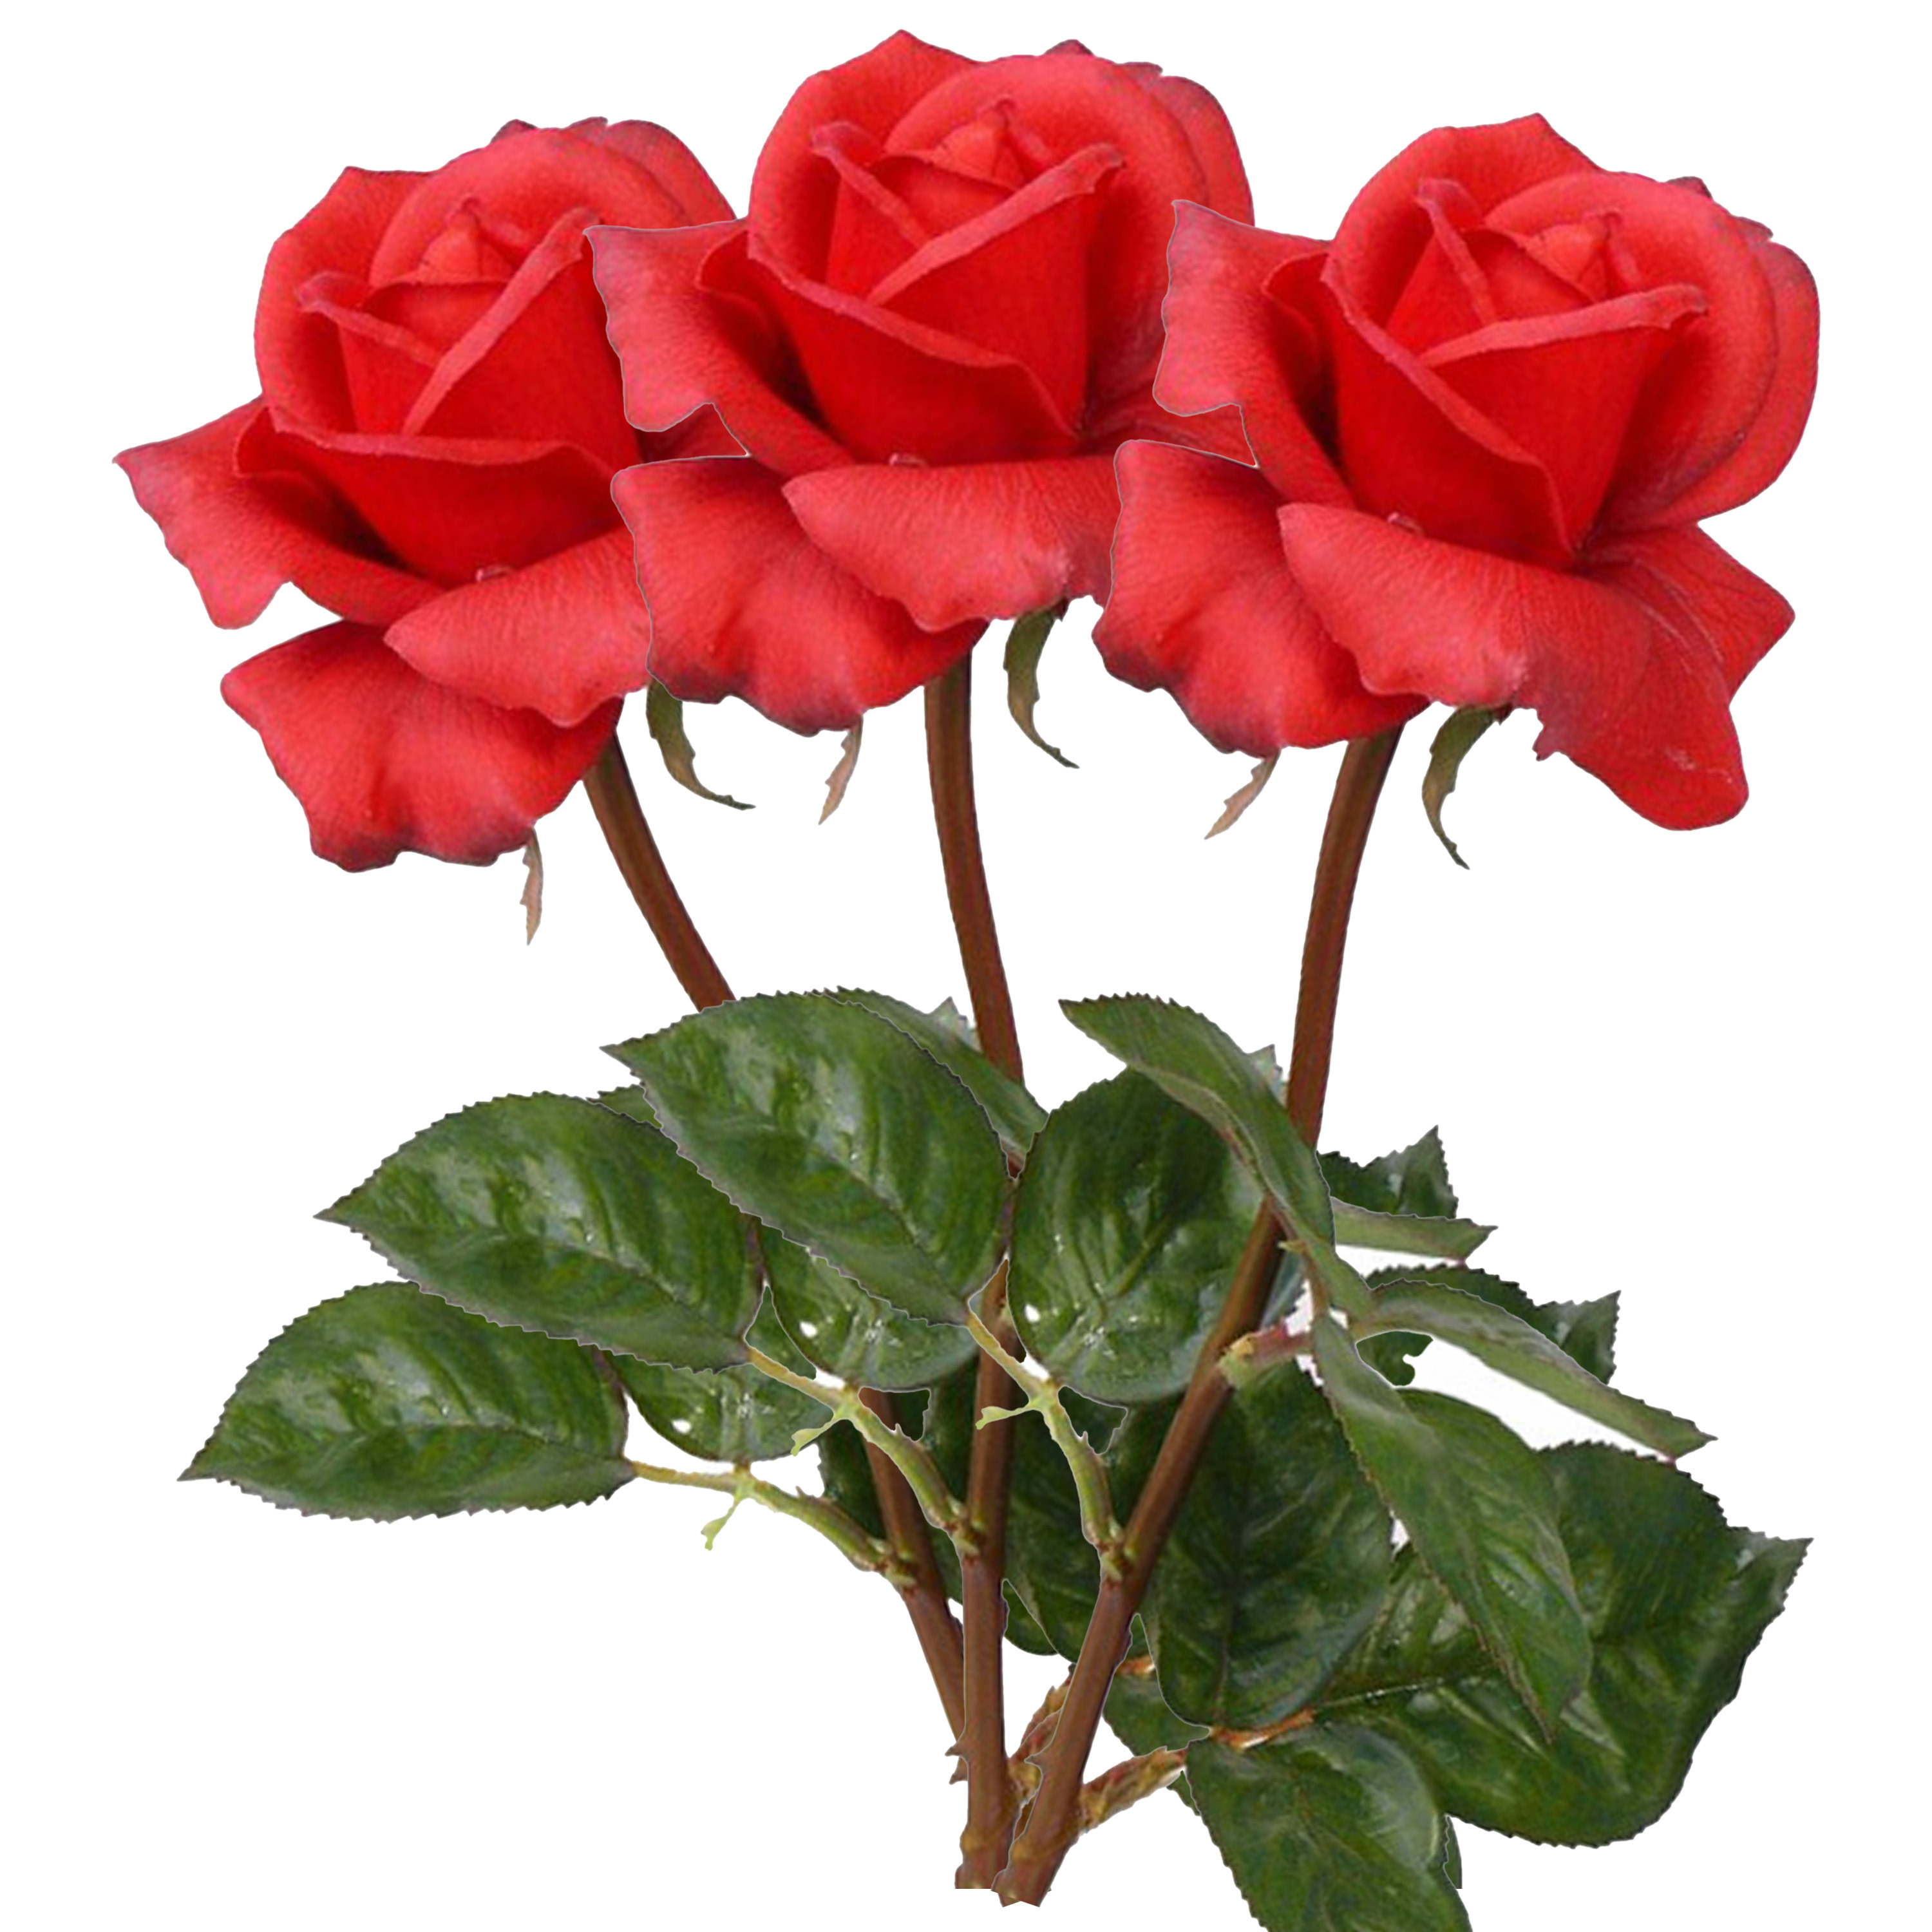 Afbeelding van Kunstbloem roos Caroline - 3x - rood - 70 cm - zijde - kunststof steel - decoratie bloemen